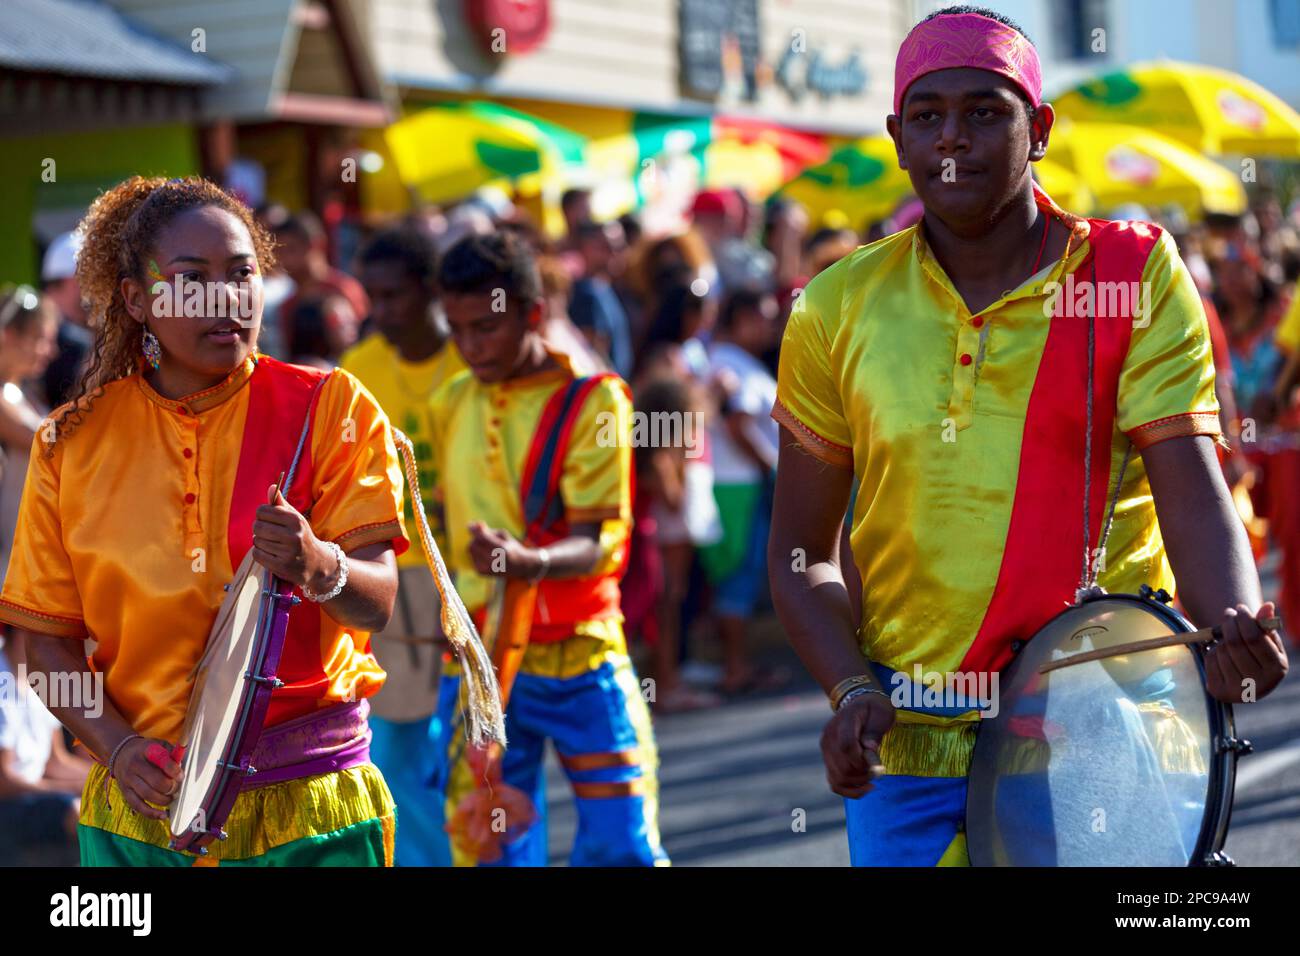 Saint-Gilles les bains, la Réunion - 25 juin 2017 : groupe de jeunes percussionnistes qui défilent pendant le carnaval du Grand Boucan. Banque D'Images